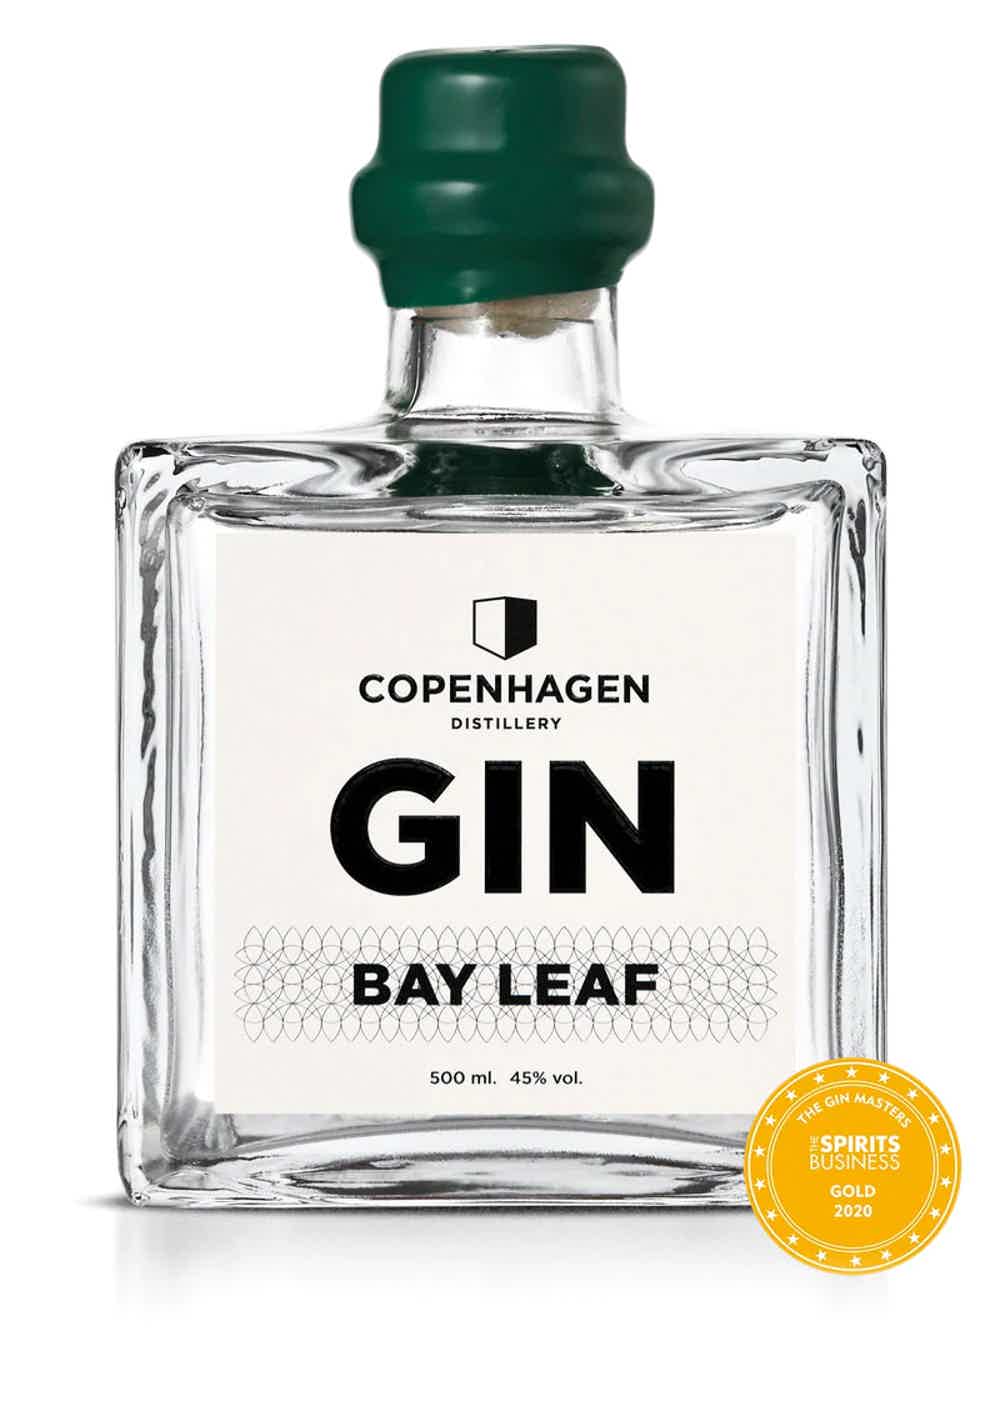 BAY LEAF GIN 45.0% 0.5L, Spirits